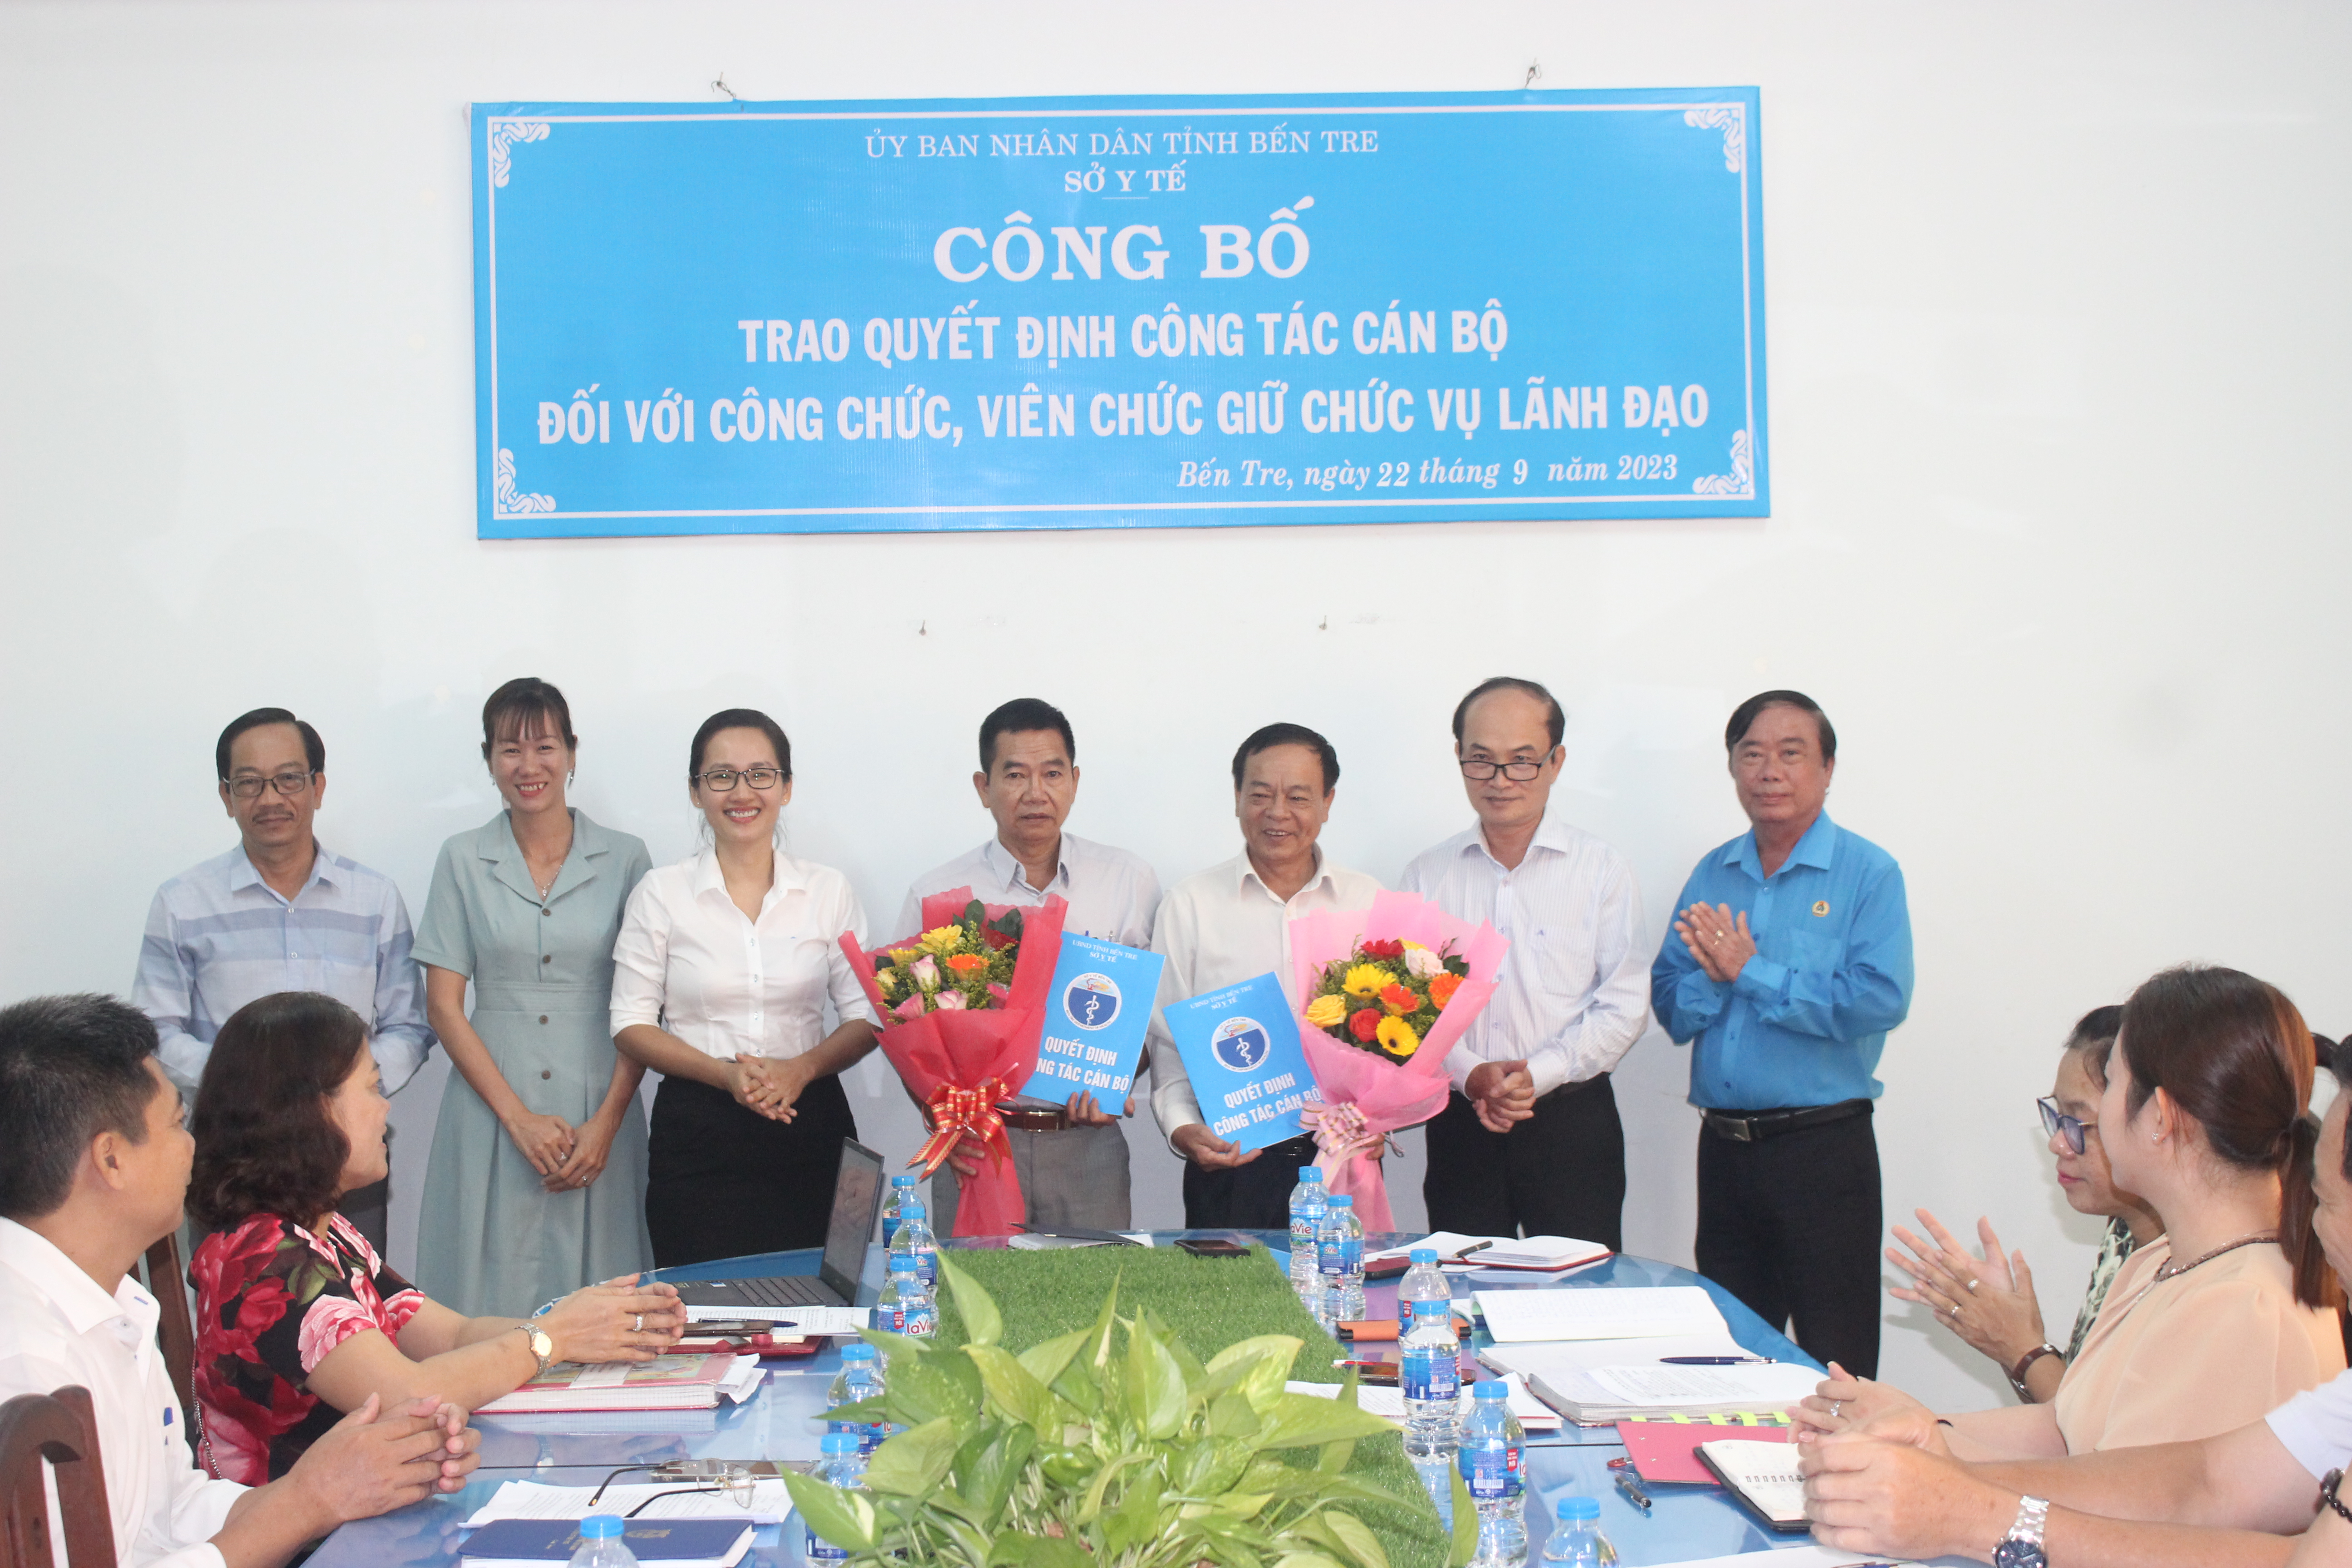 Ban Giám đốc Sở Y tế, Chủ tịch Công đoàn ngành tặng hoa và trao quyết định cho Ông Phạm Thanh Hải và Ông Phạm Công Luận.